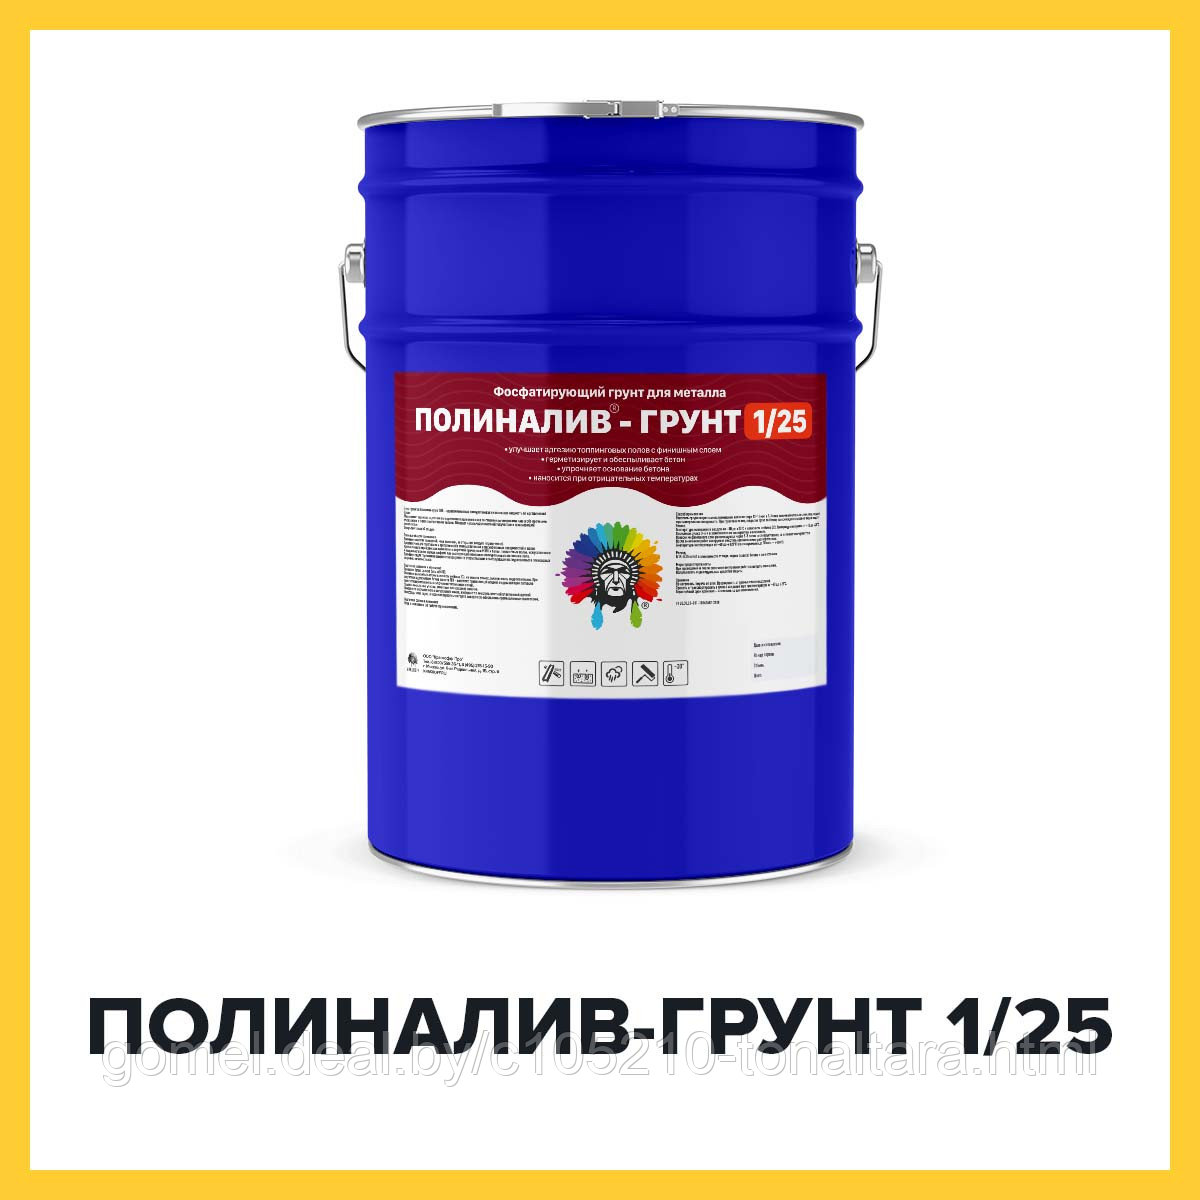 ПОЛИНАЛИВ-ГРУНТ 1/25 (Kraskoff Pro) – полиуретановая грунт-пропитка для наливных полов